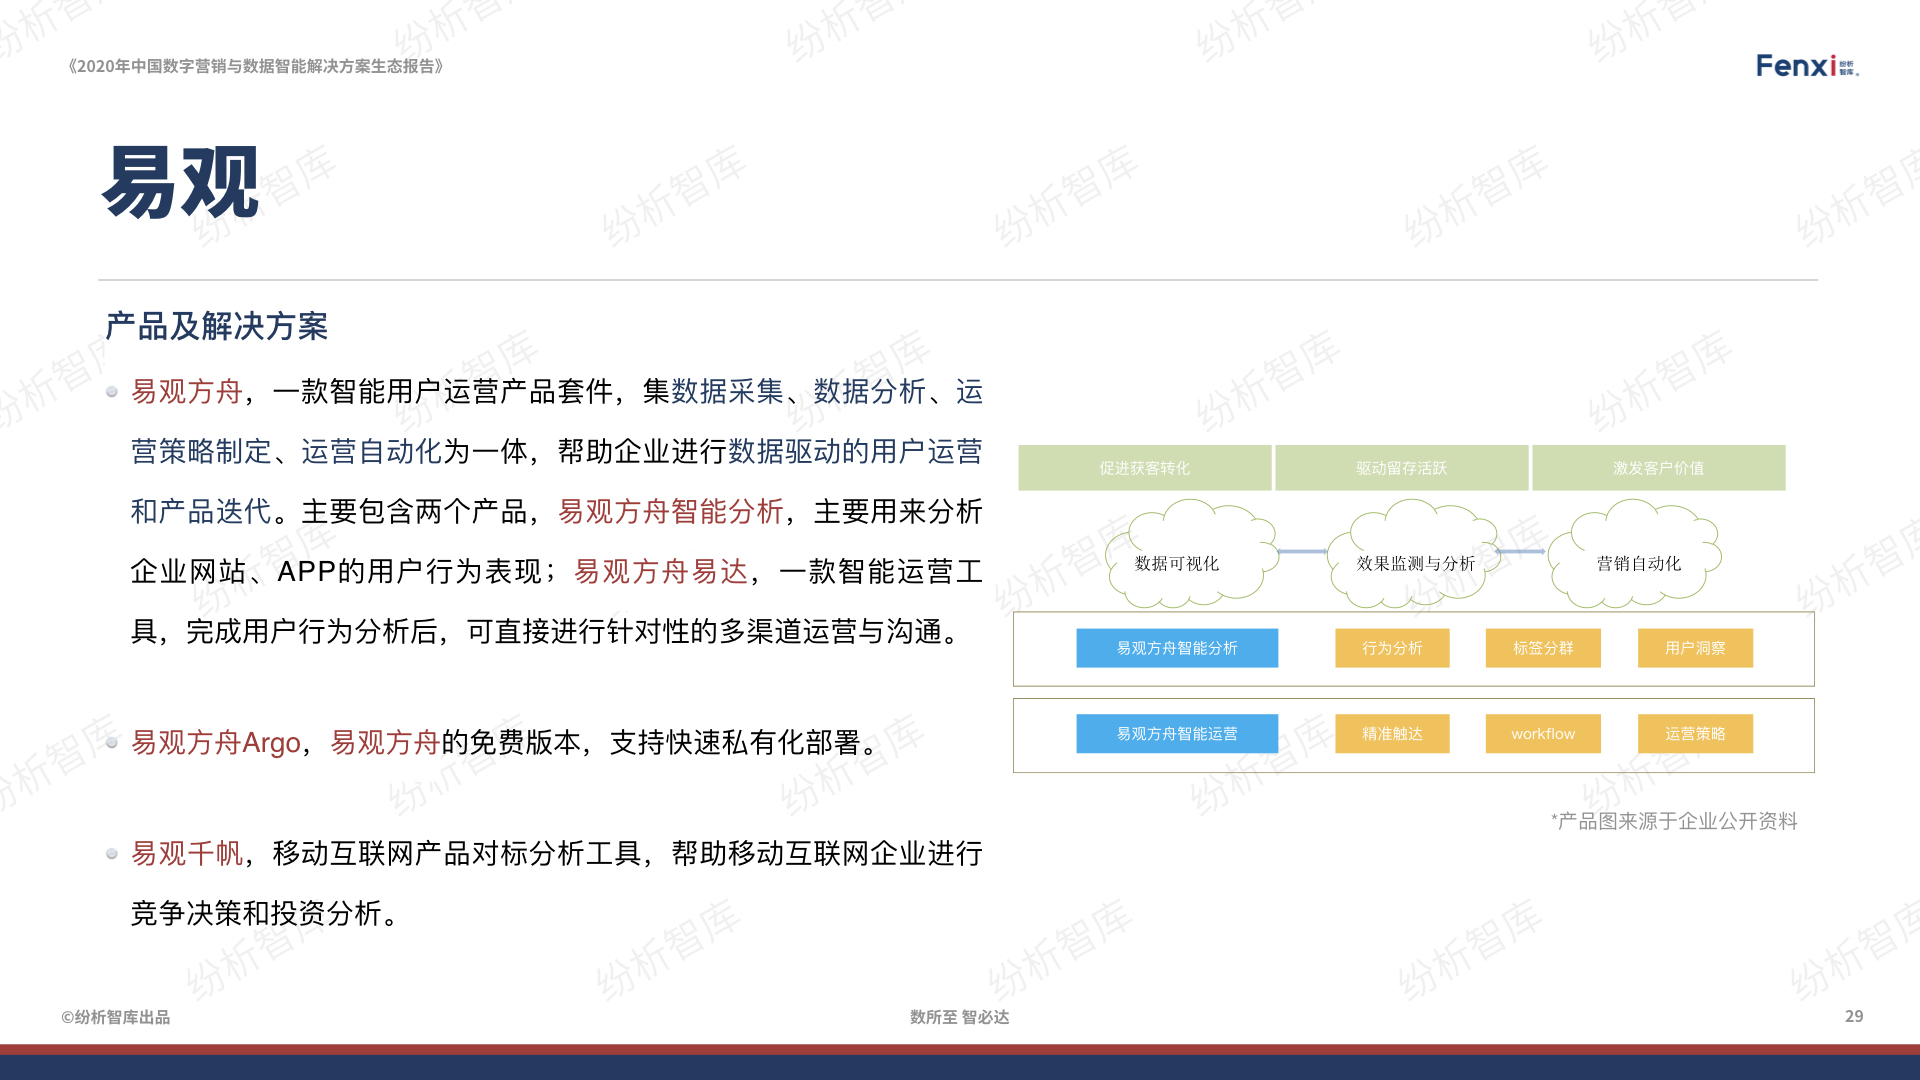 【V8】《2020年中国数字营销与数据智能解决方案生态图报告》0106.029.jpeg